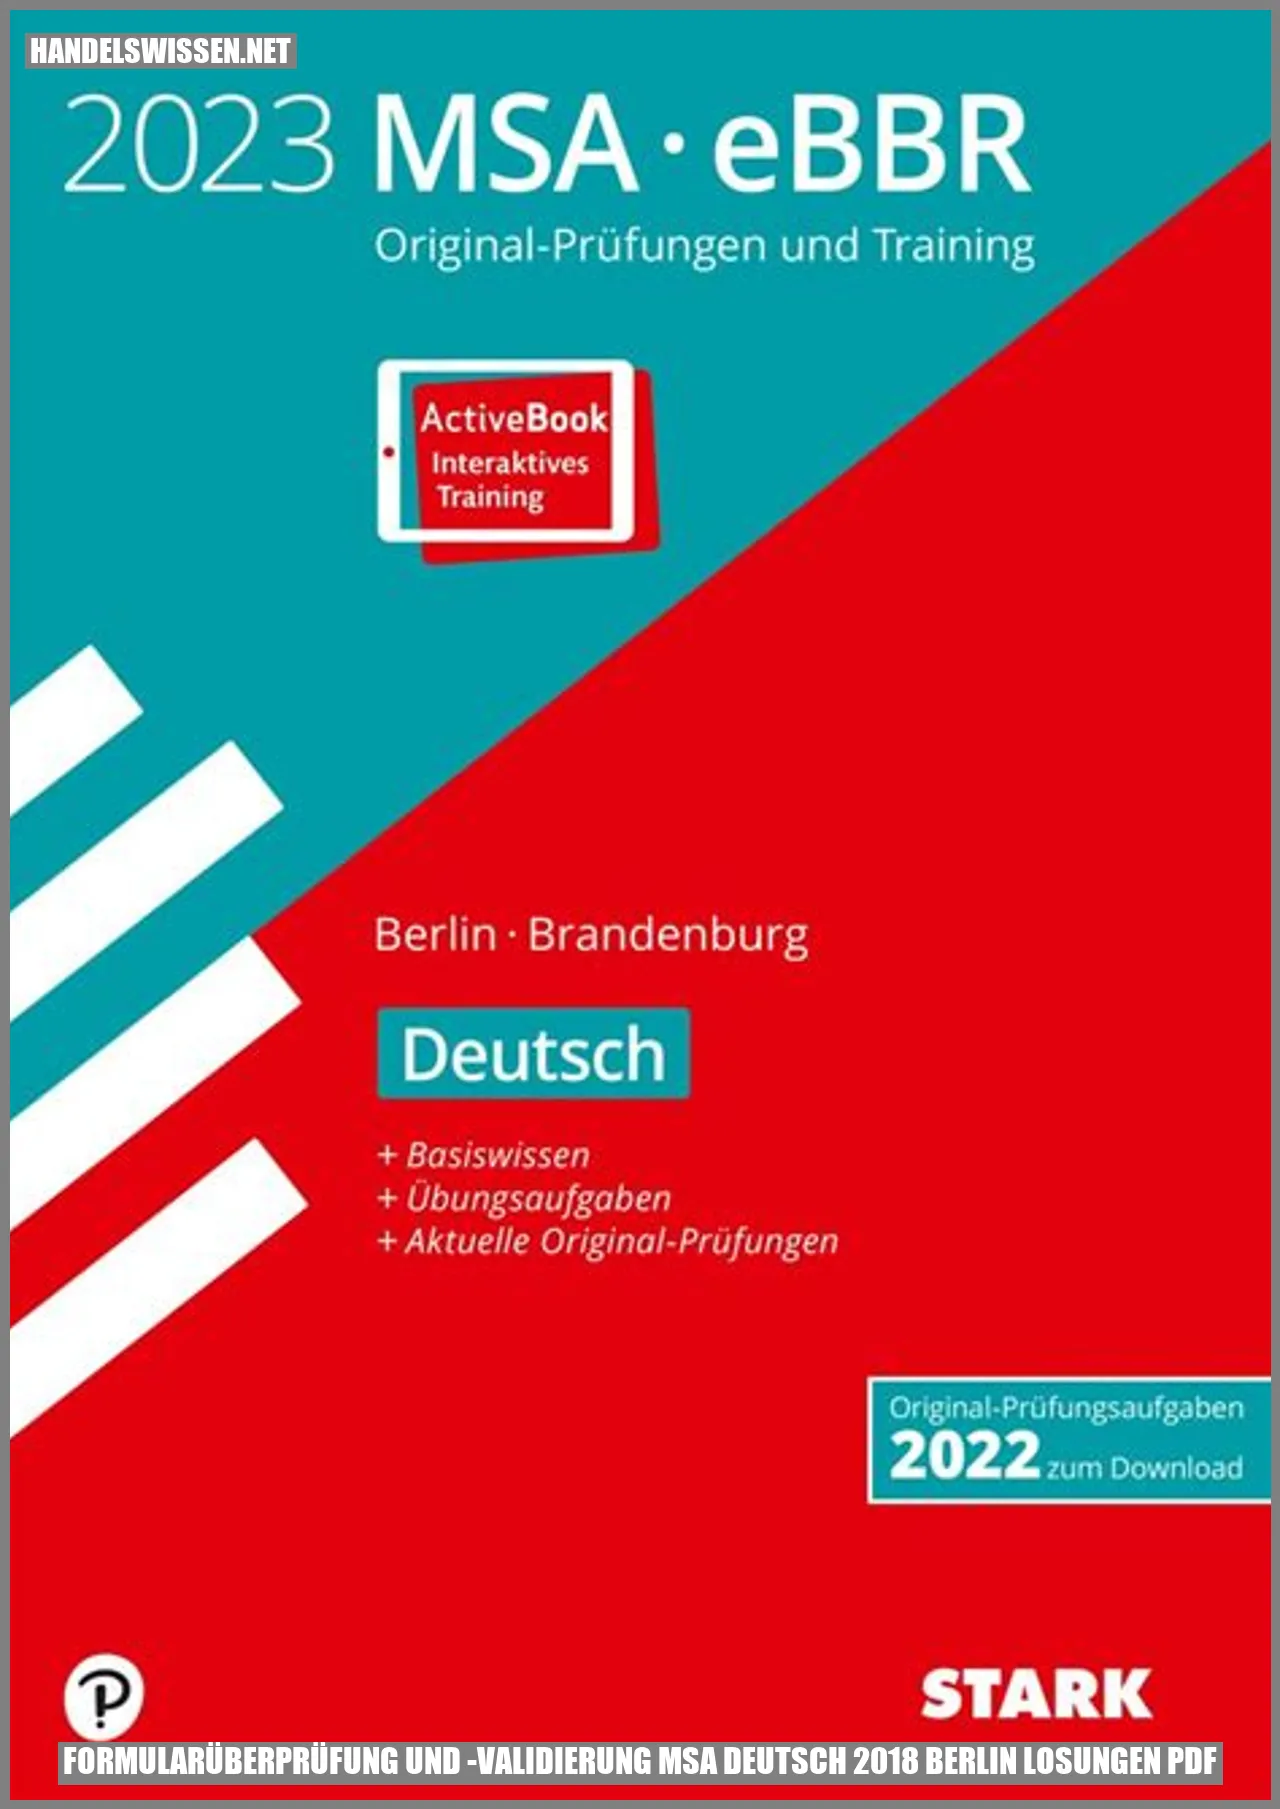 Formularüberprüfung und -validierung msa deutsch 2018 berlin losungen pdf